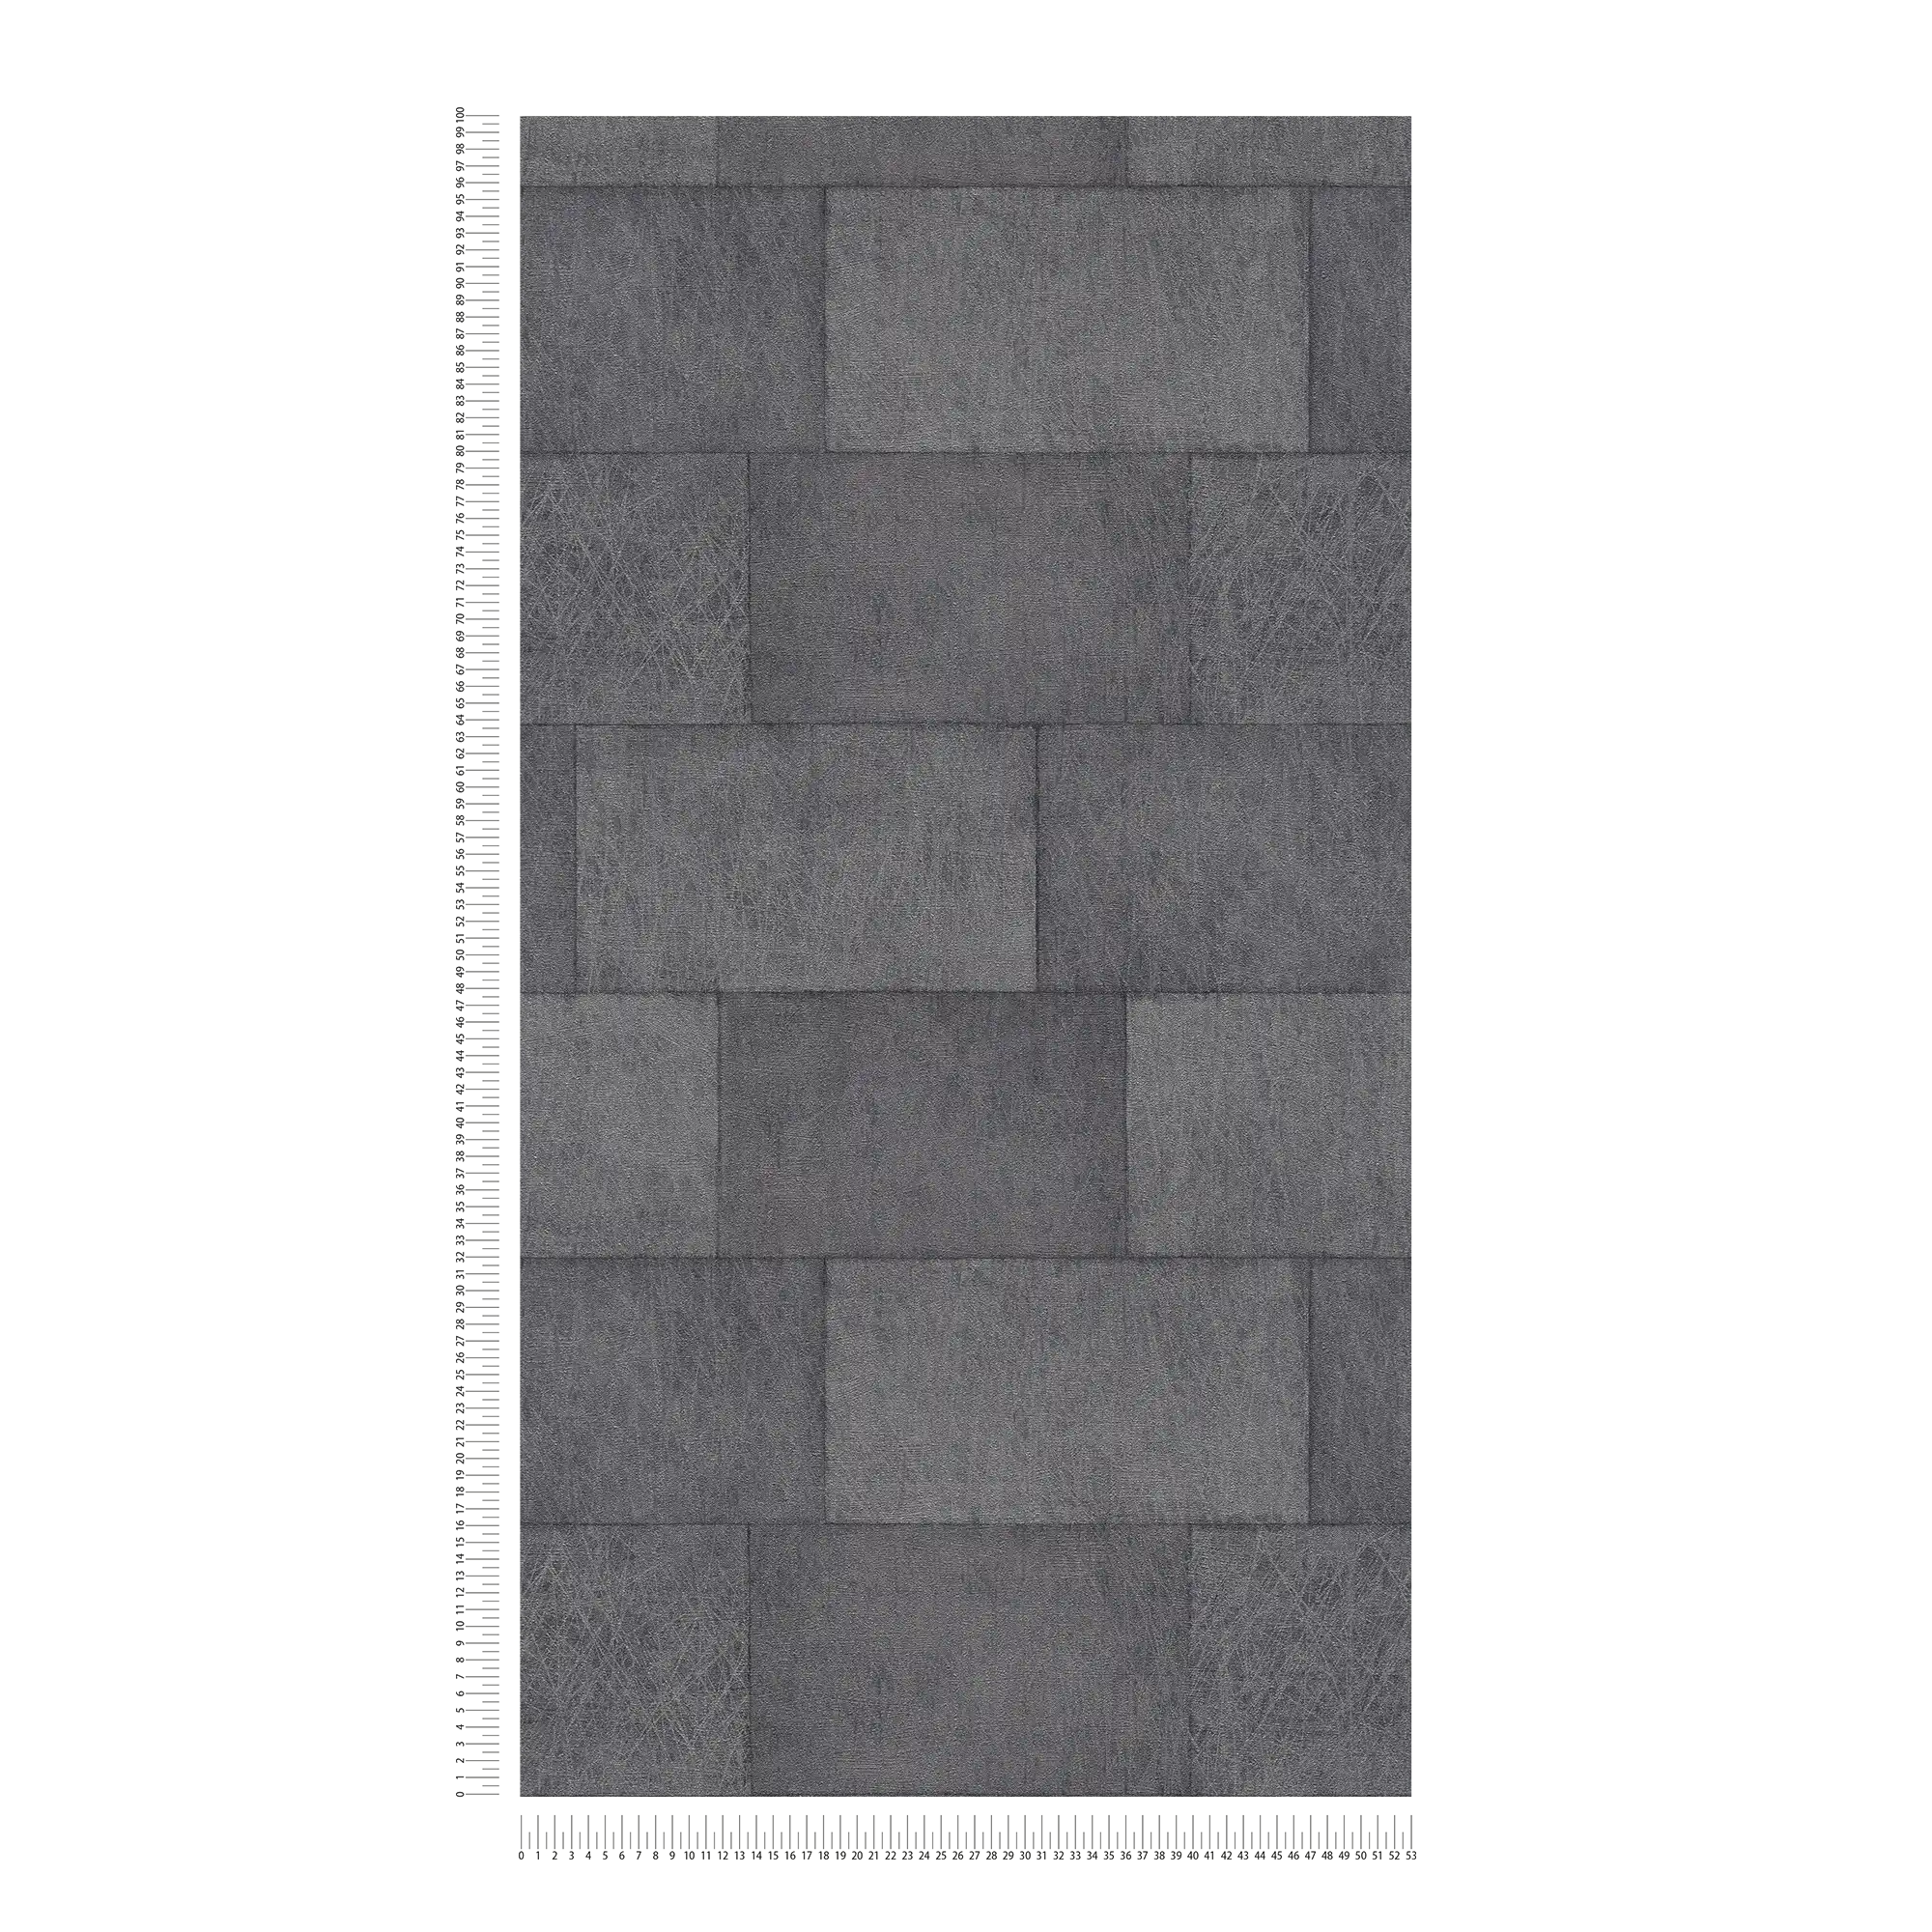             Baksteenbehang met structuureffect, glanzend - grijs, zwart
        